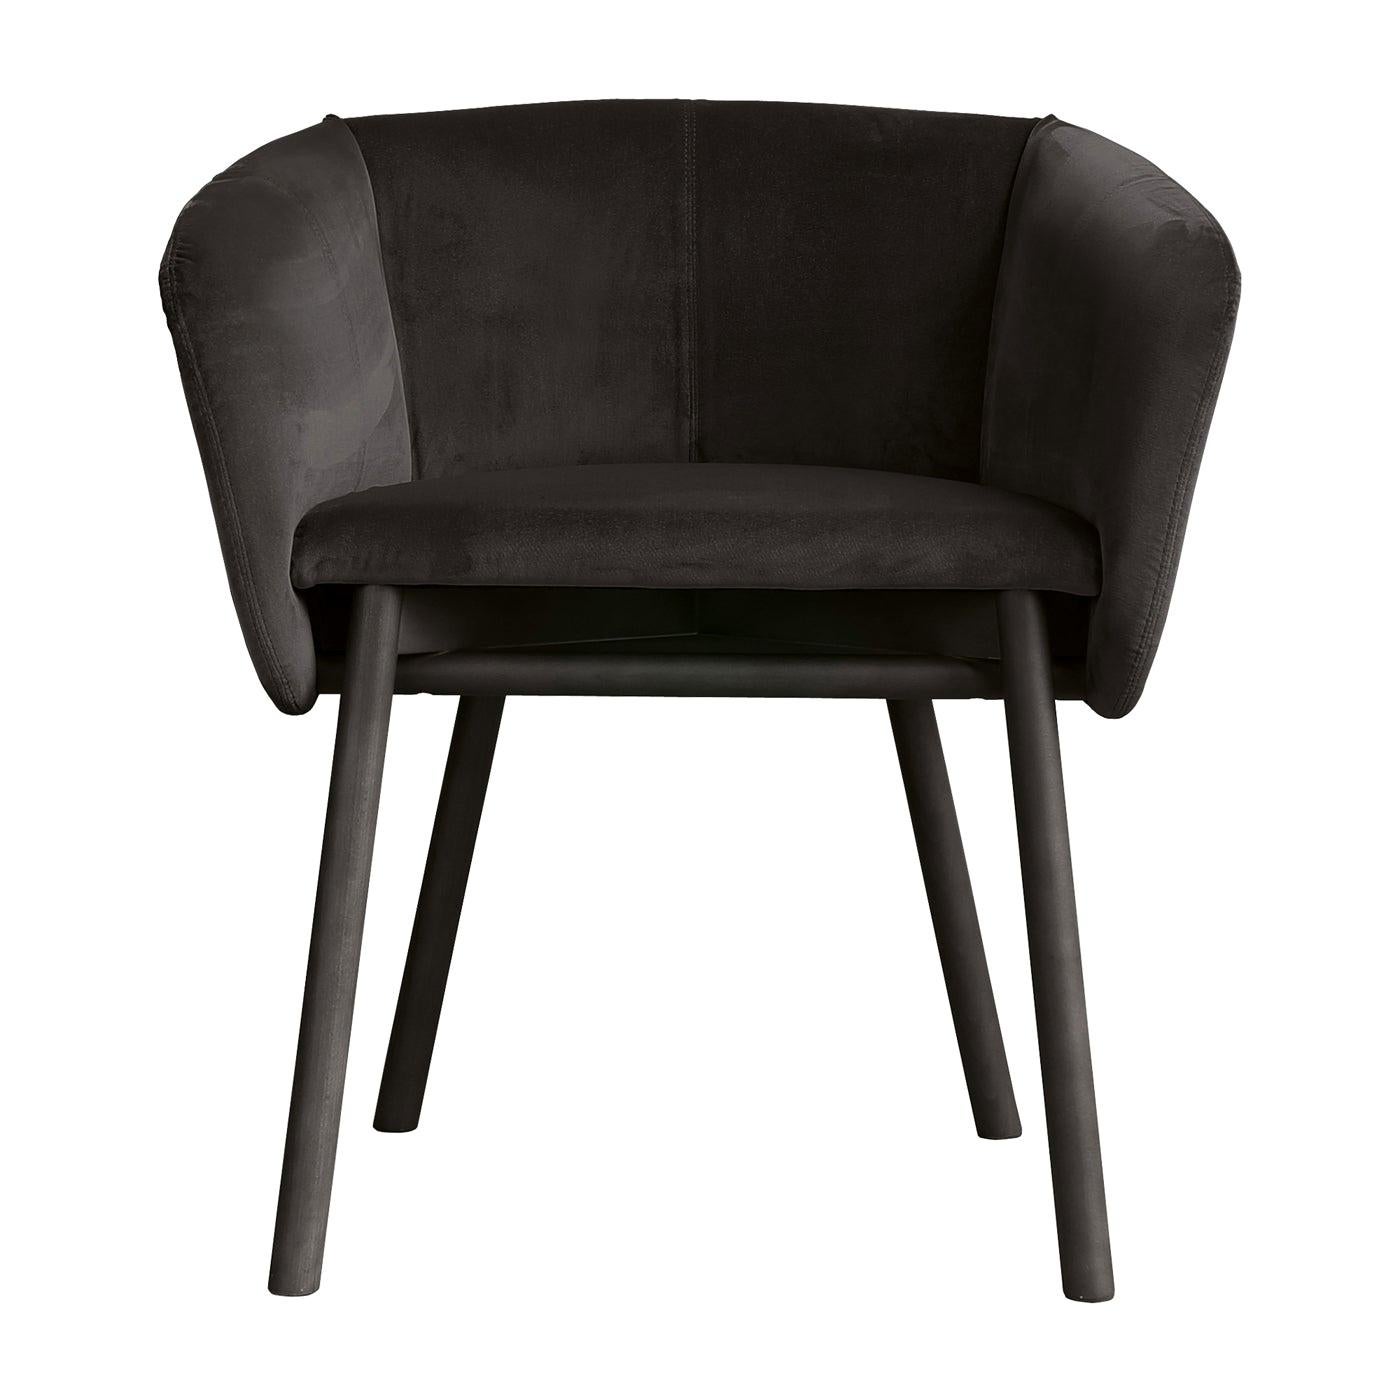 Balù Black Chair by Emilio Nanni For Sale